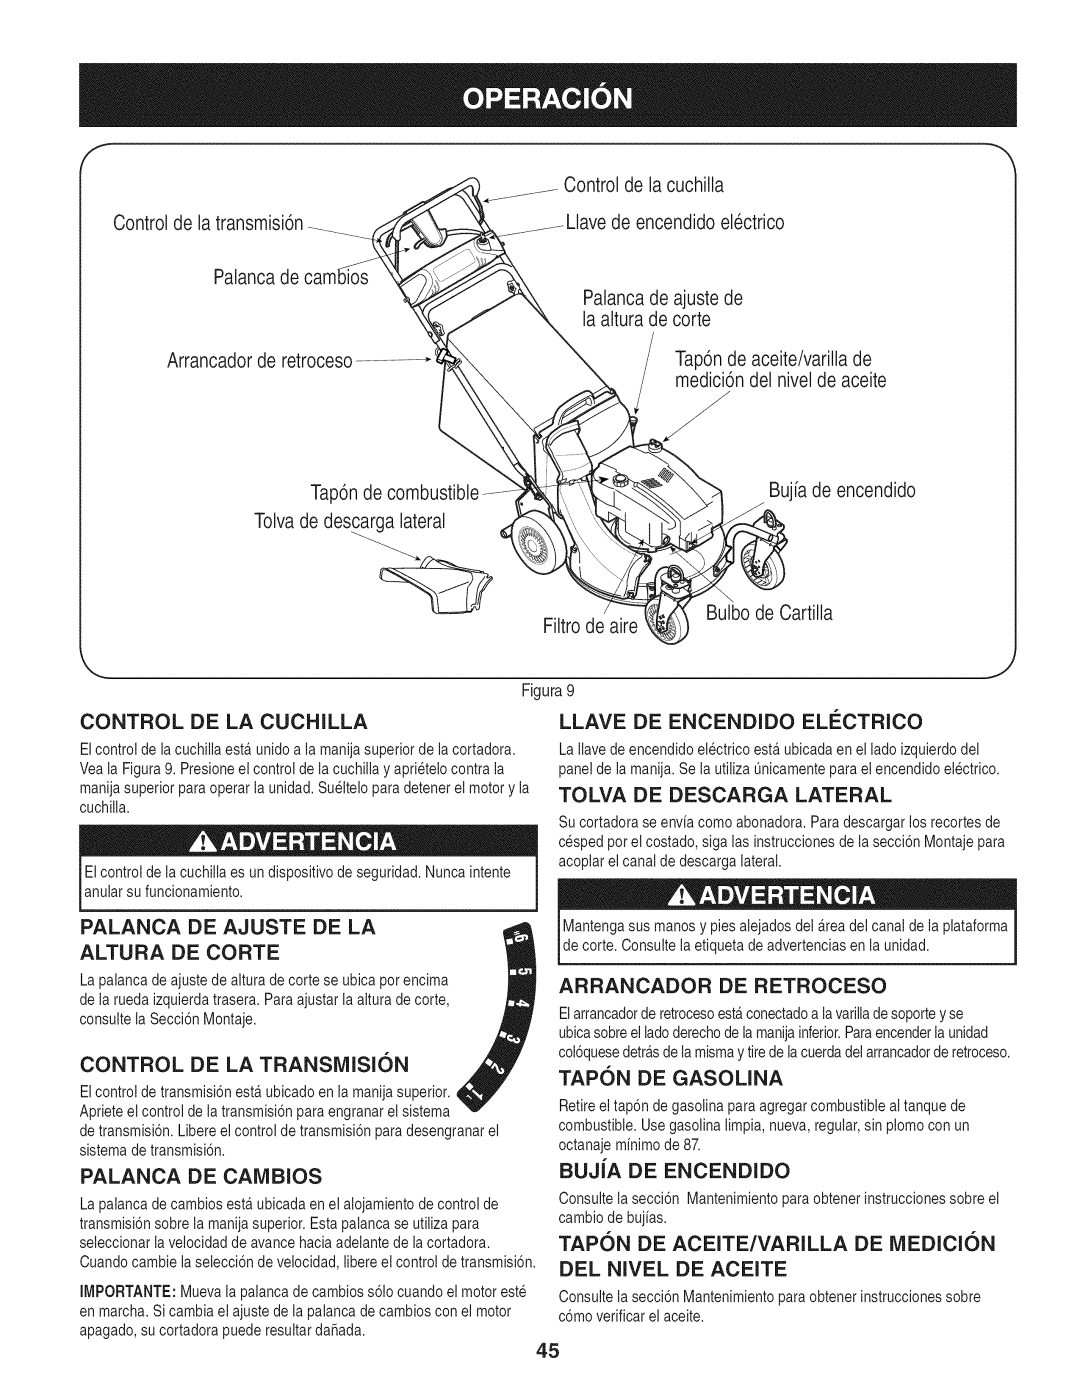 Craftsman 247.887210 manual Palanca De Ajuste De La, TAPON DE ACEITE/VARILLA DE iVlEDICI6N, Del Nivel De Aceite 